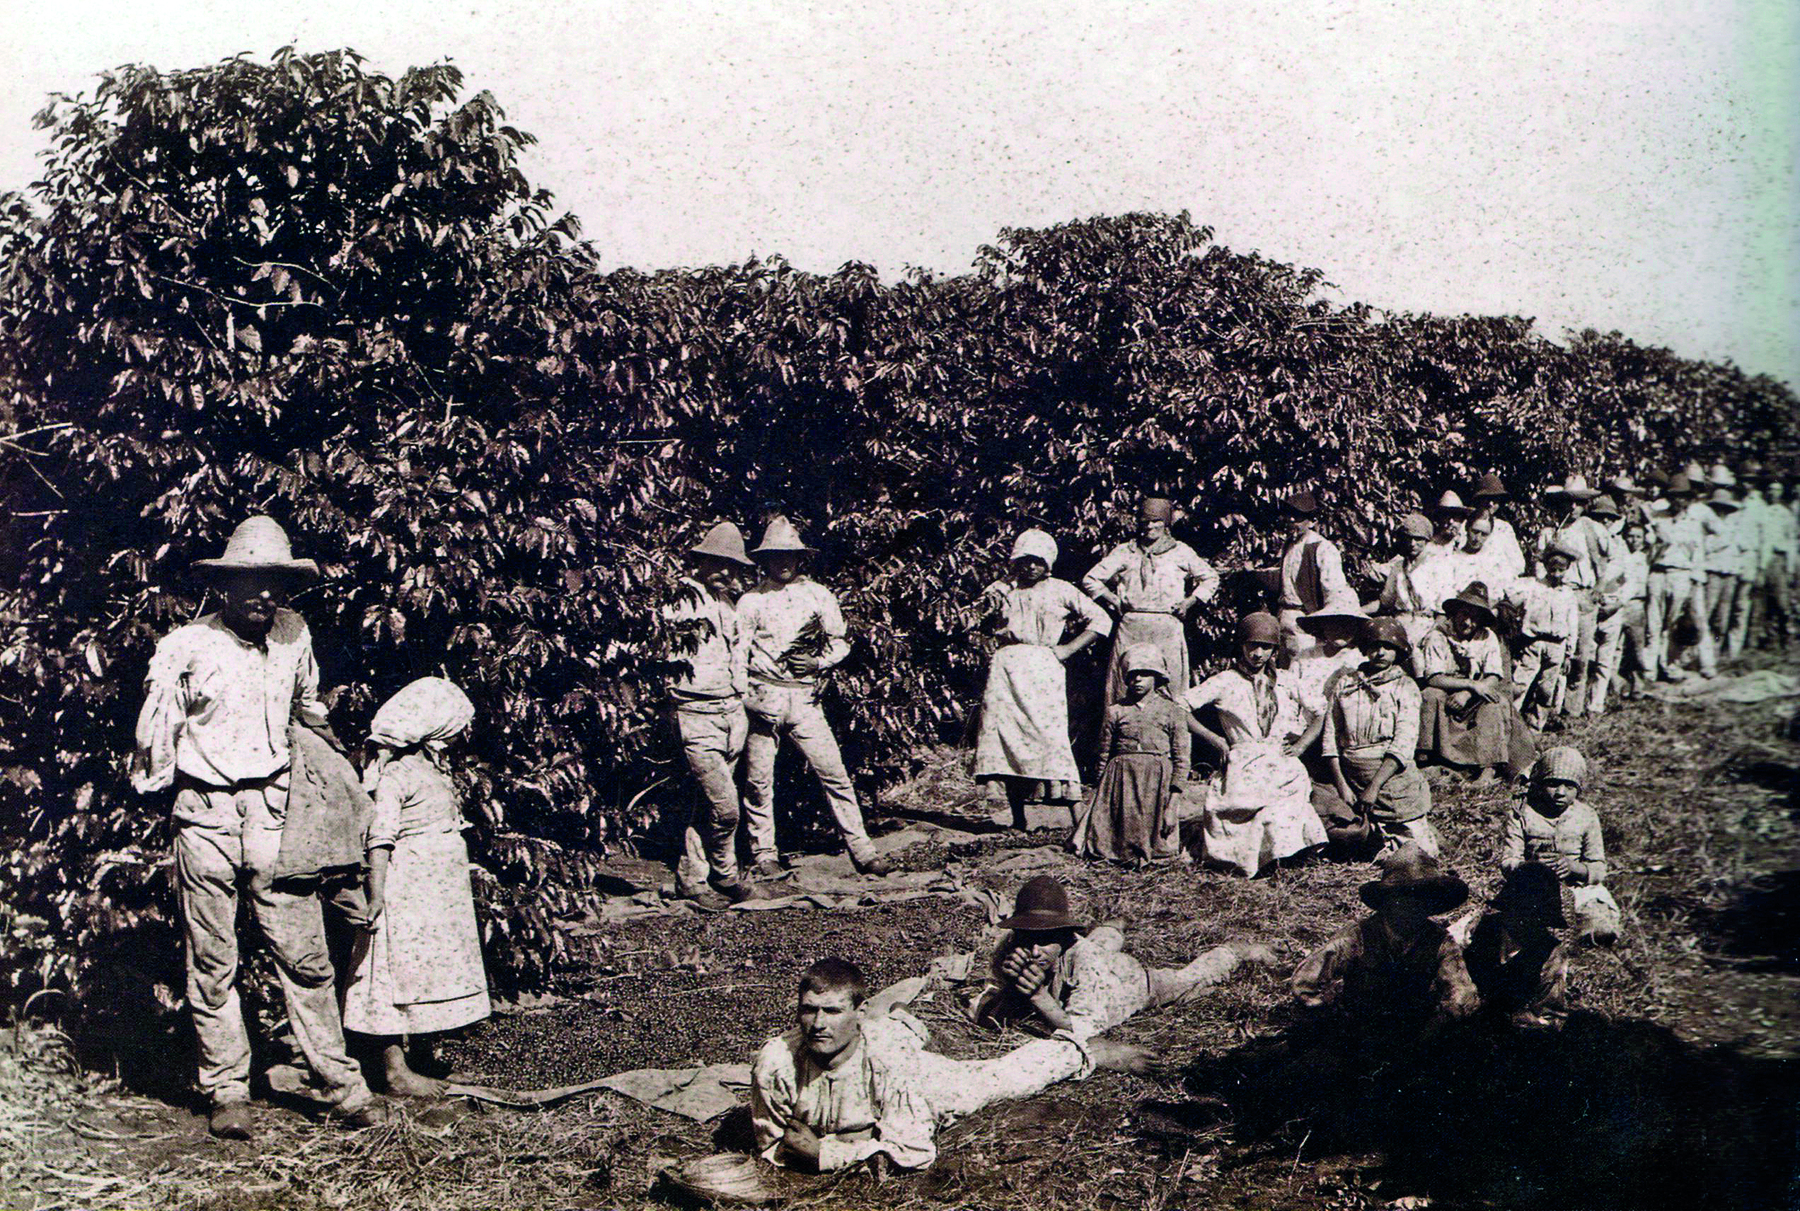 Fotografia em preto e branco. Diversas pessoas vestindo roupas claras, homens, mulheres e crianças, distribuídos por entre as fileiras de um cafezal. Alguns portam sacolas de pano.